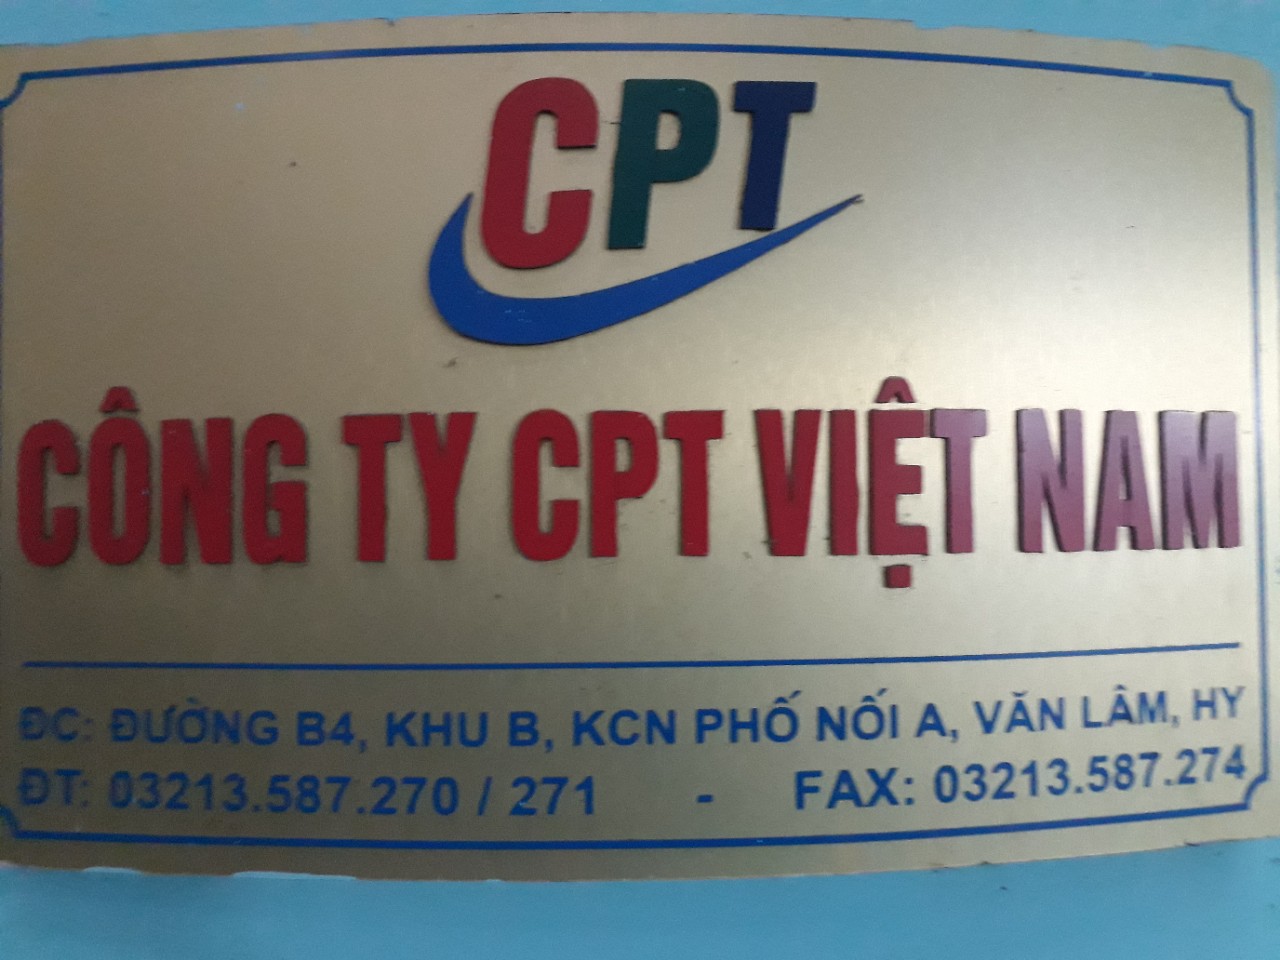  - Công Ty TNHH Sản Xuất Thương Mại CPT Việt Nam